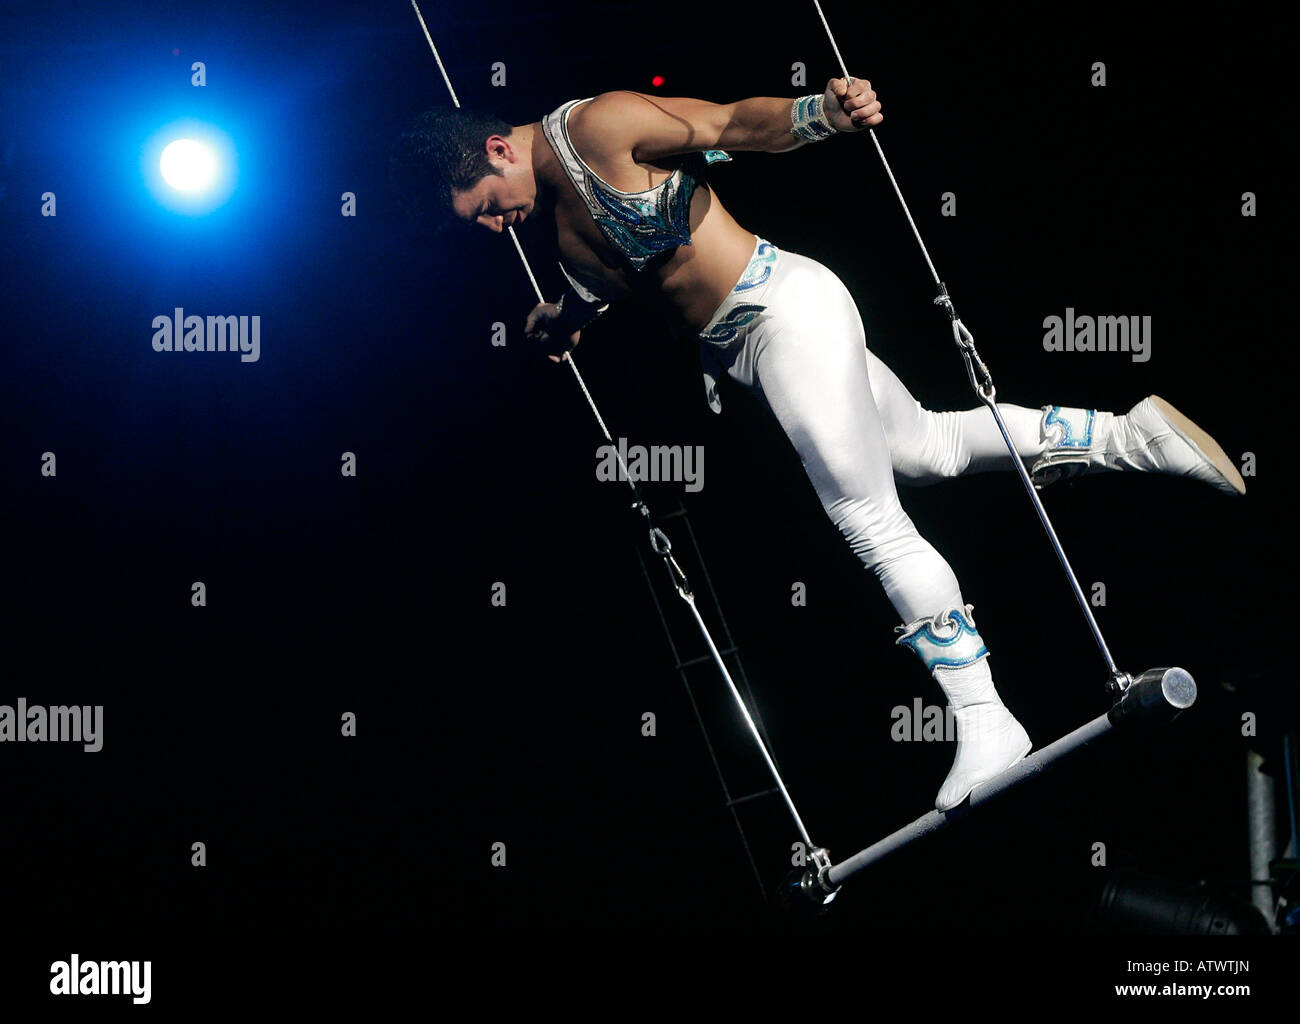 Alain Alegria at the trapezoid Stock Photo